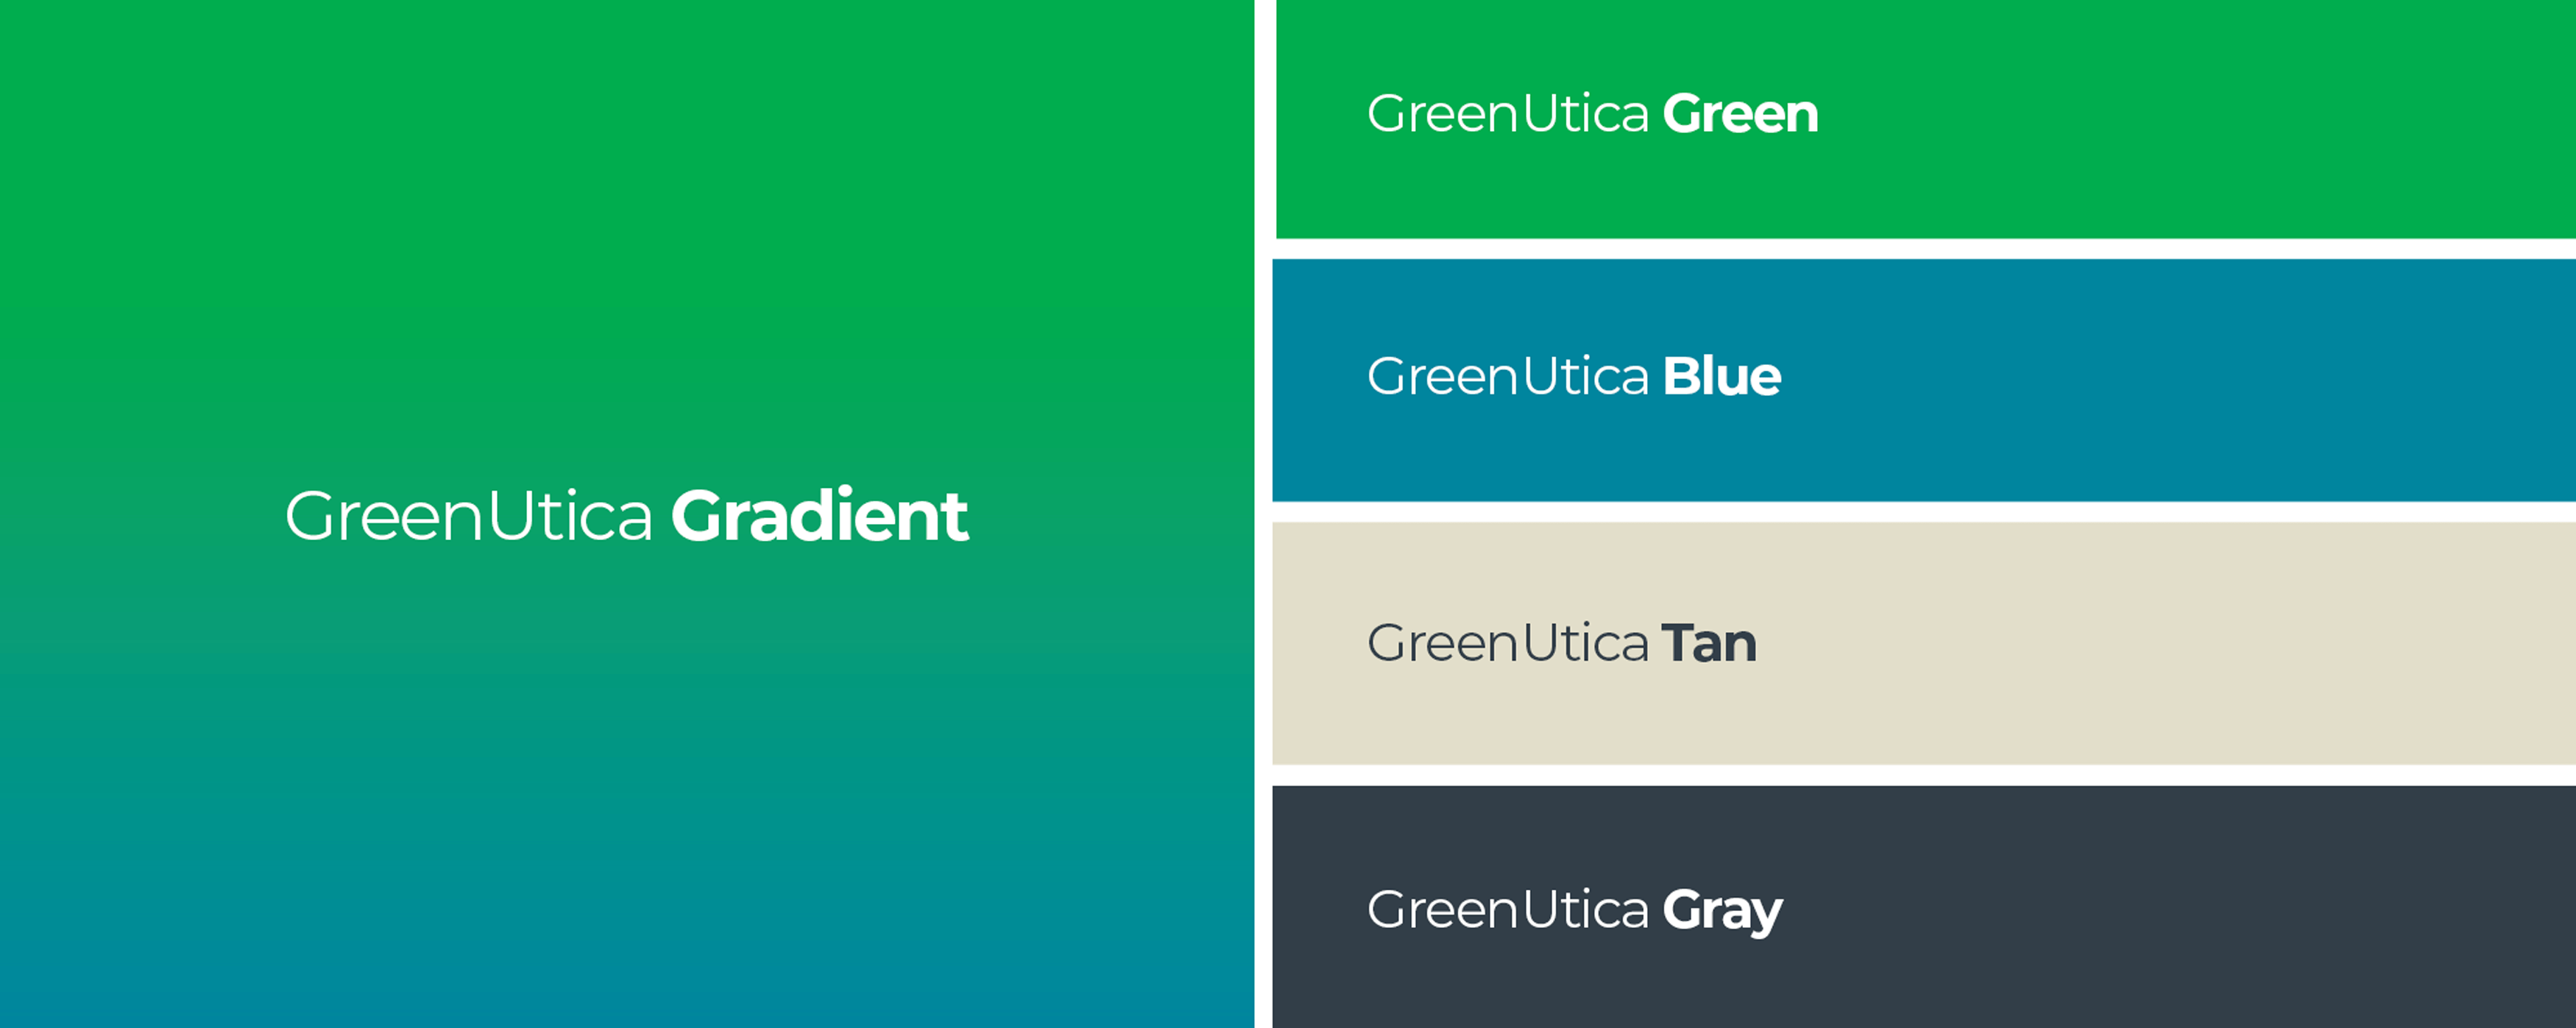 GreenUtica Colors